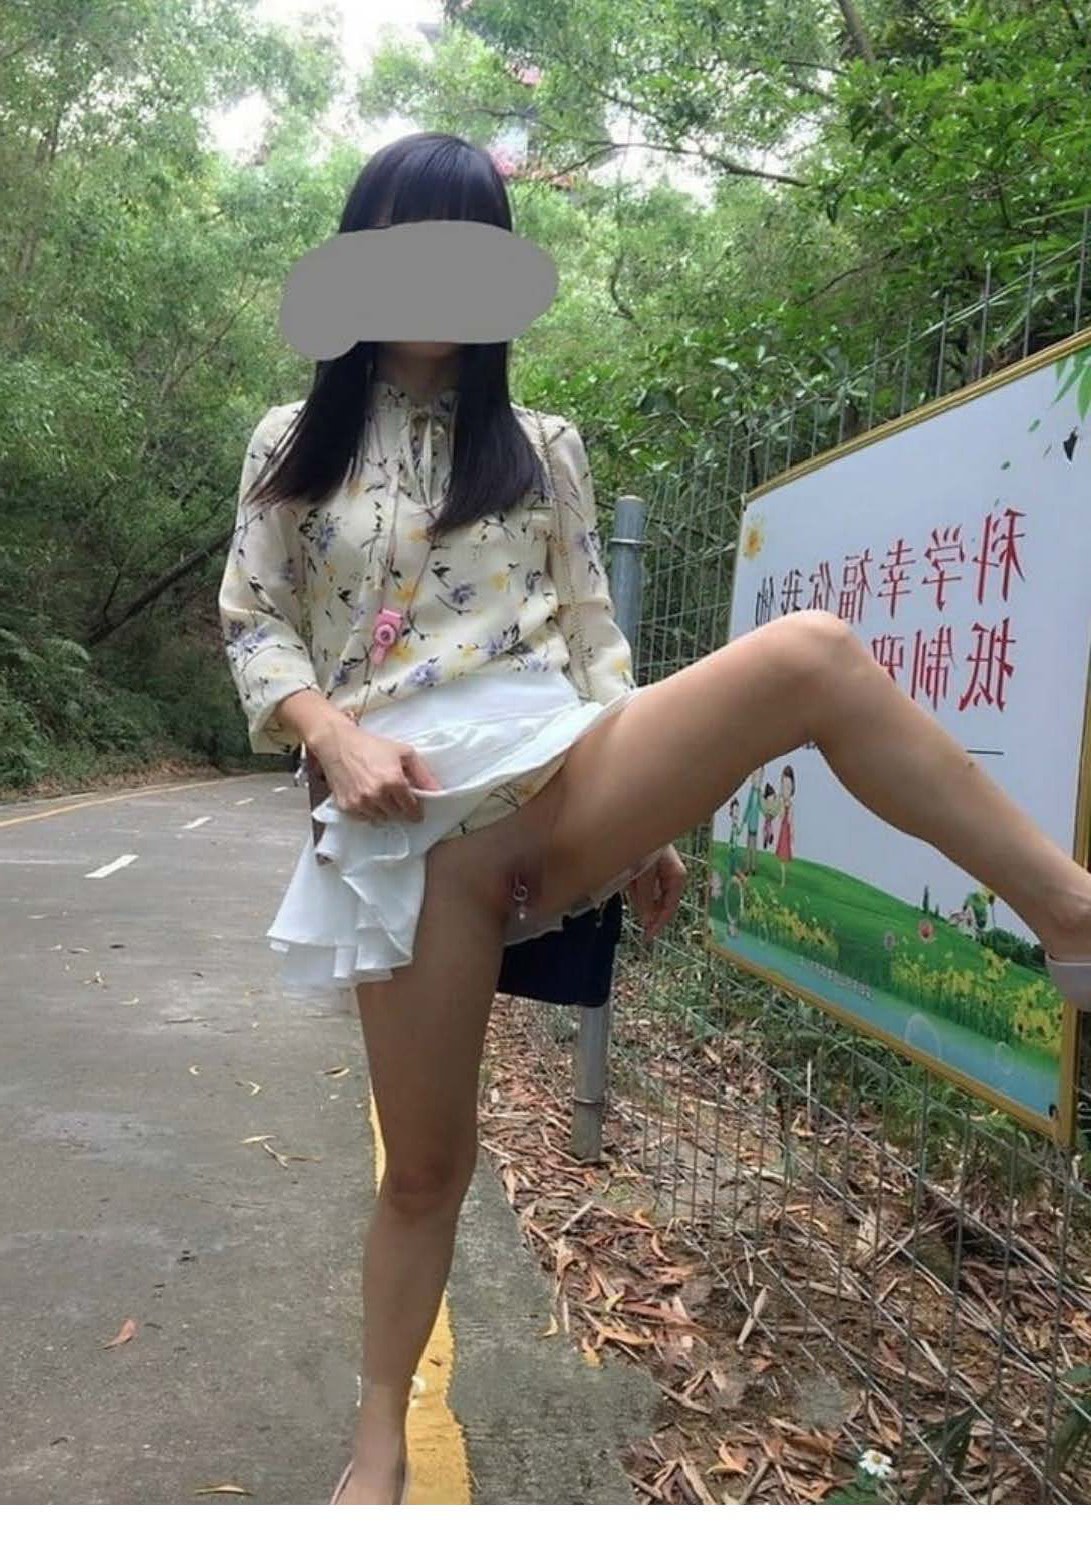 chat asian upskirt 100 nude photos